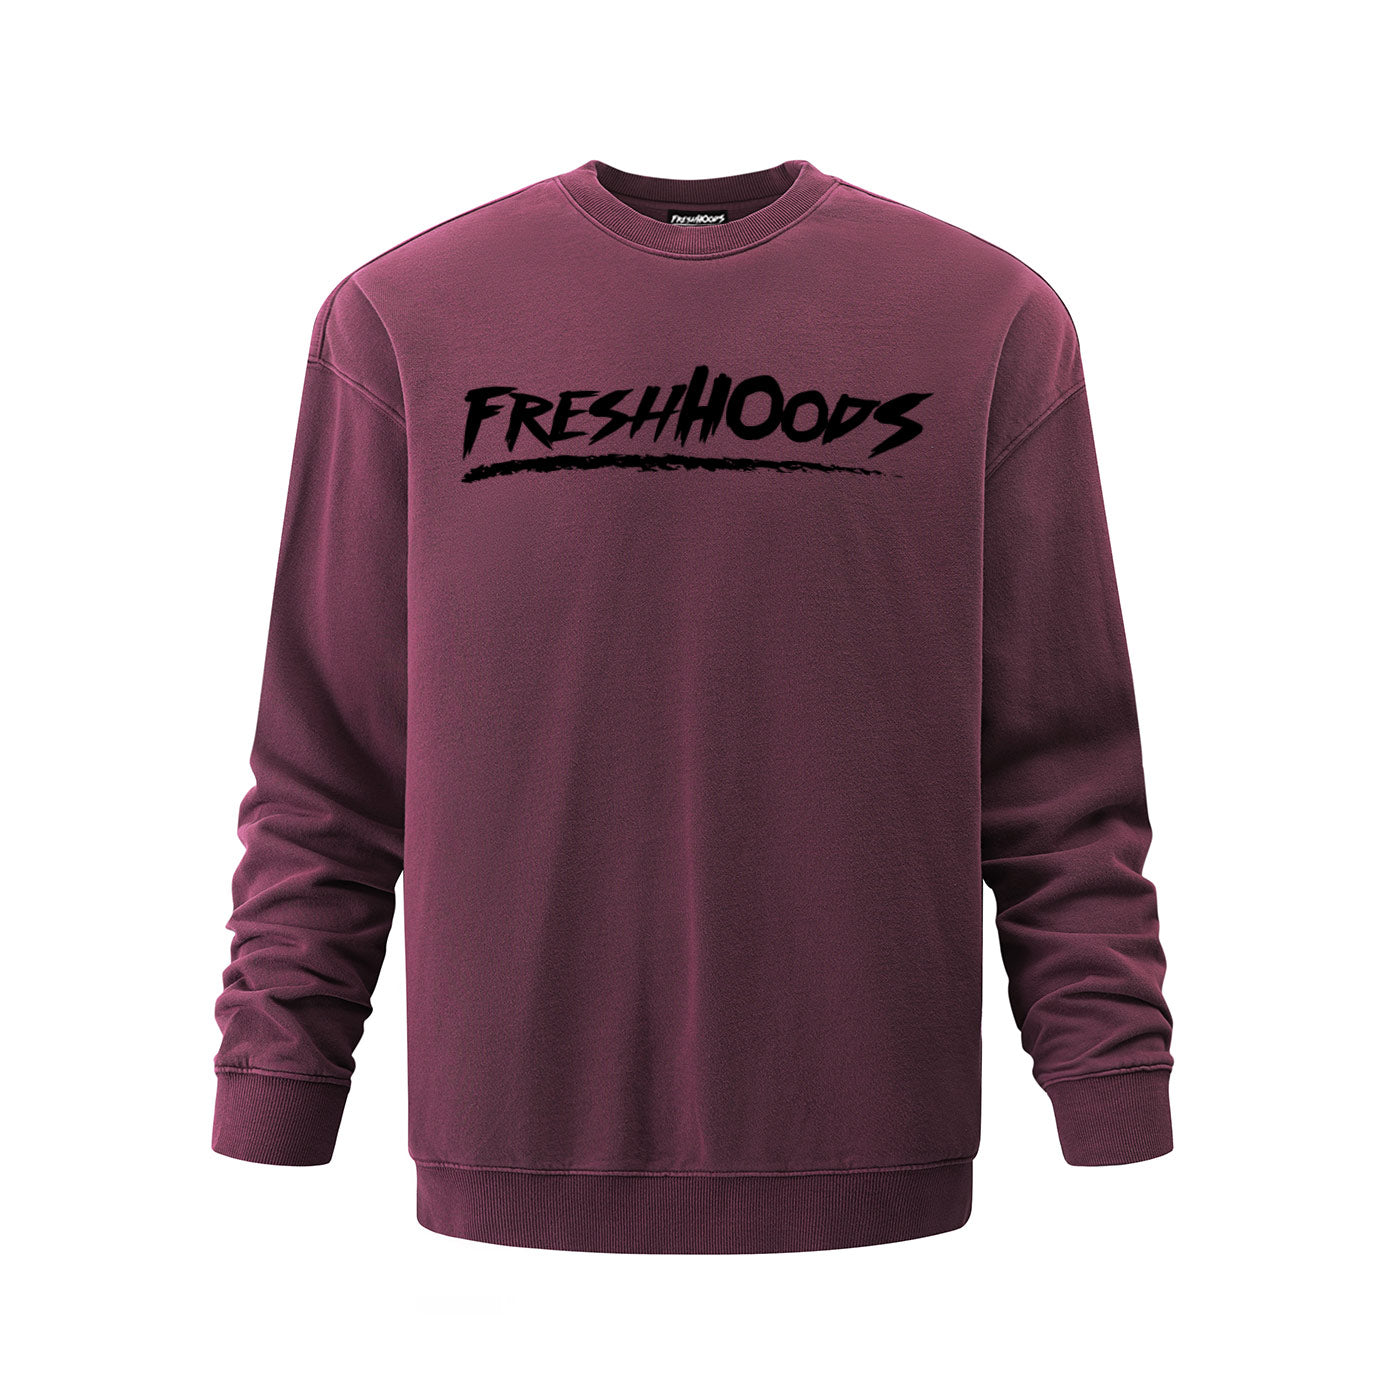 FRESHHOODS Burgundy Oversized Sweatshirt